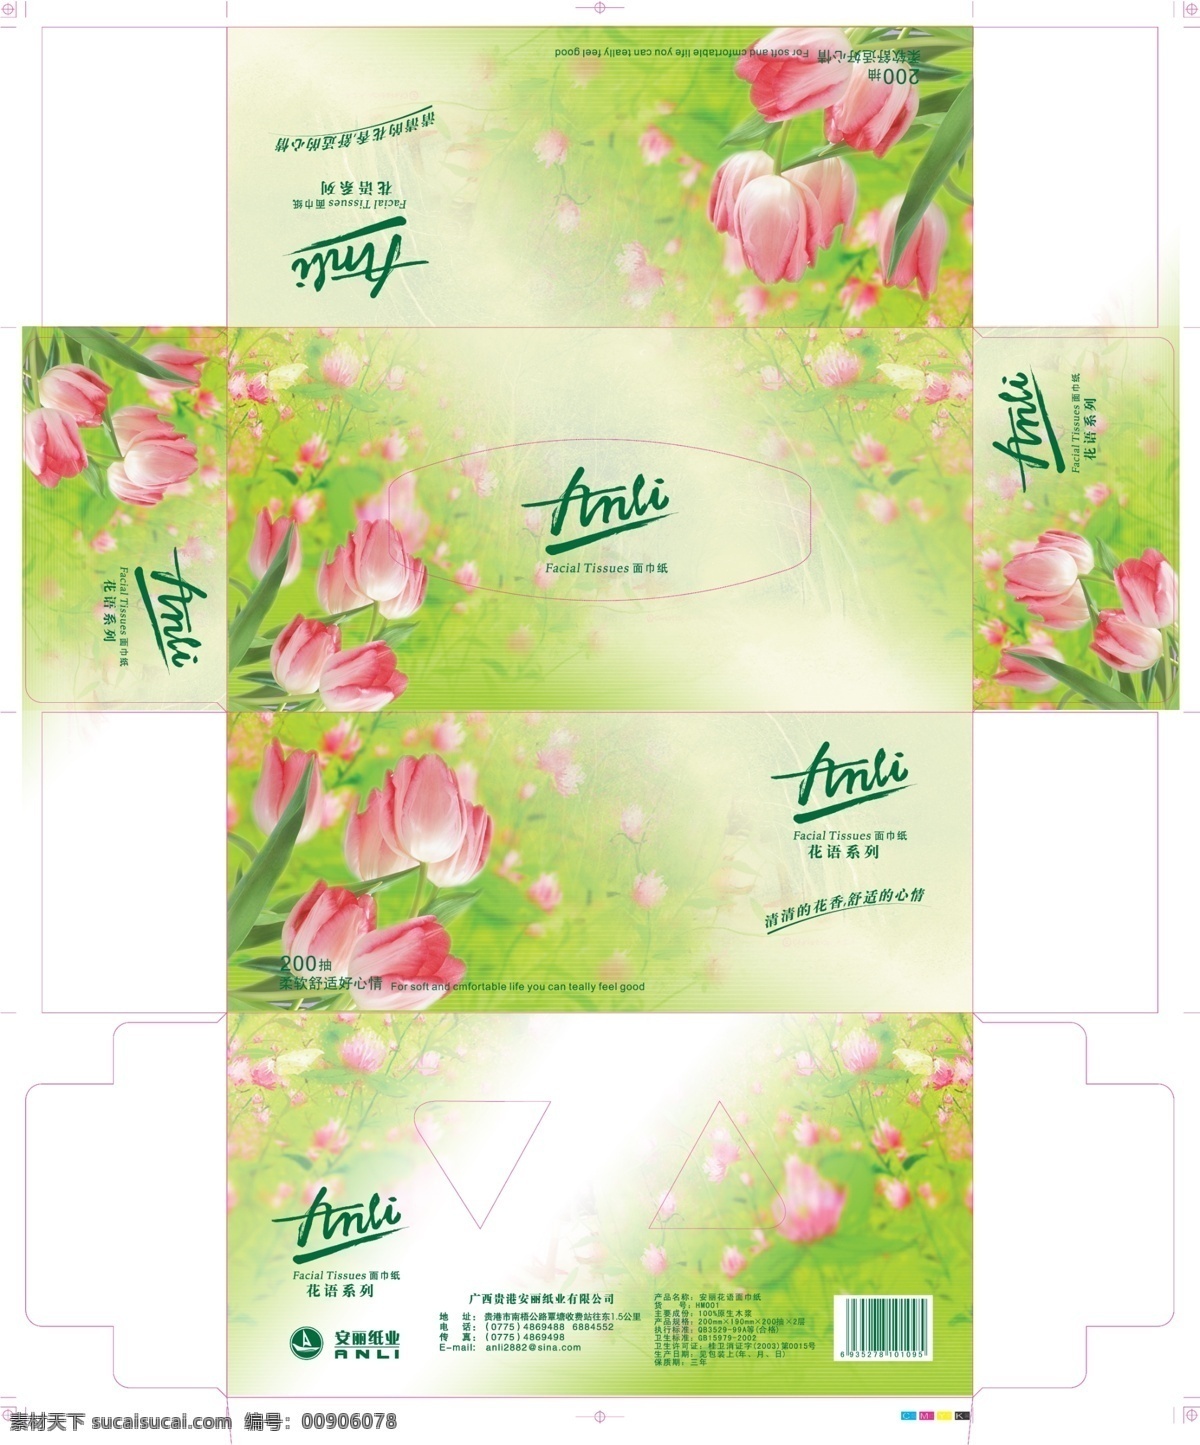 唯美 花朵 纸盒 设计制作 效果图 抽纸设计 分层素材 绿色 叶子 艺术字 纸盒设计 盒子印刷素材 袋子素材 纸盒产品 psd源文件